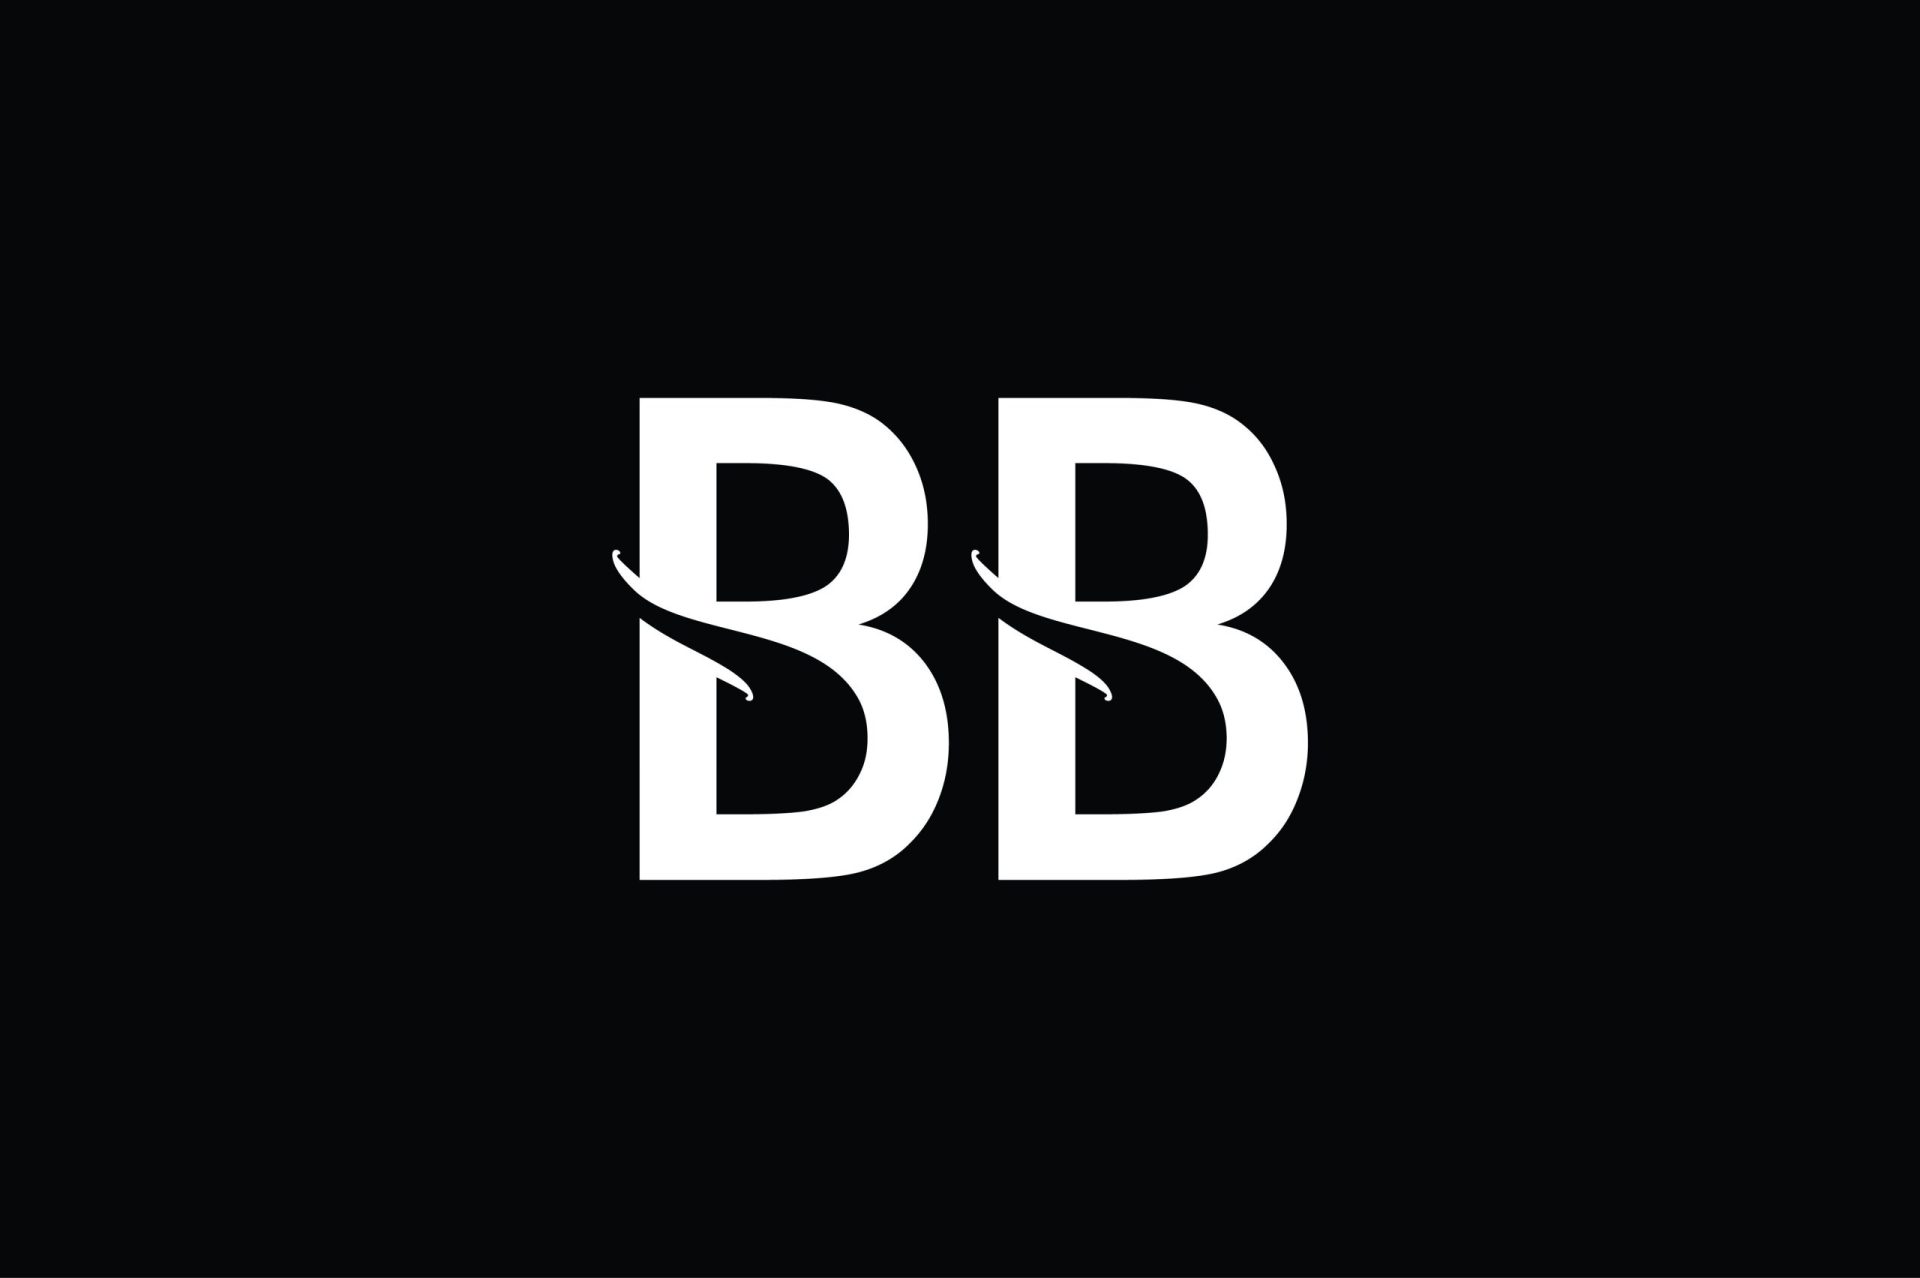 bb logo ideas 9